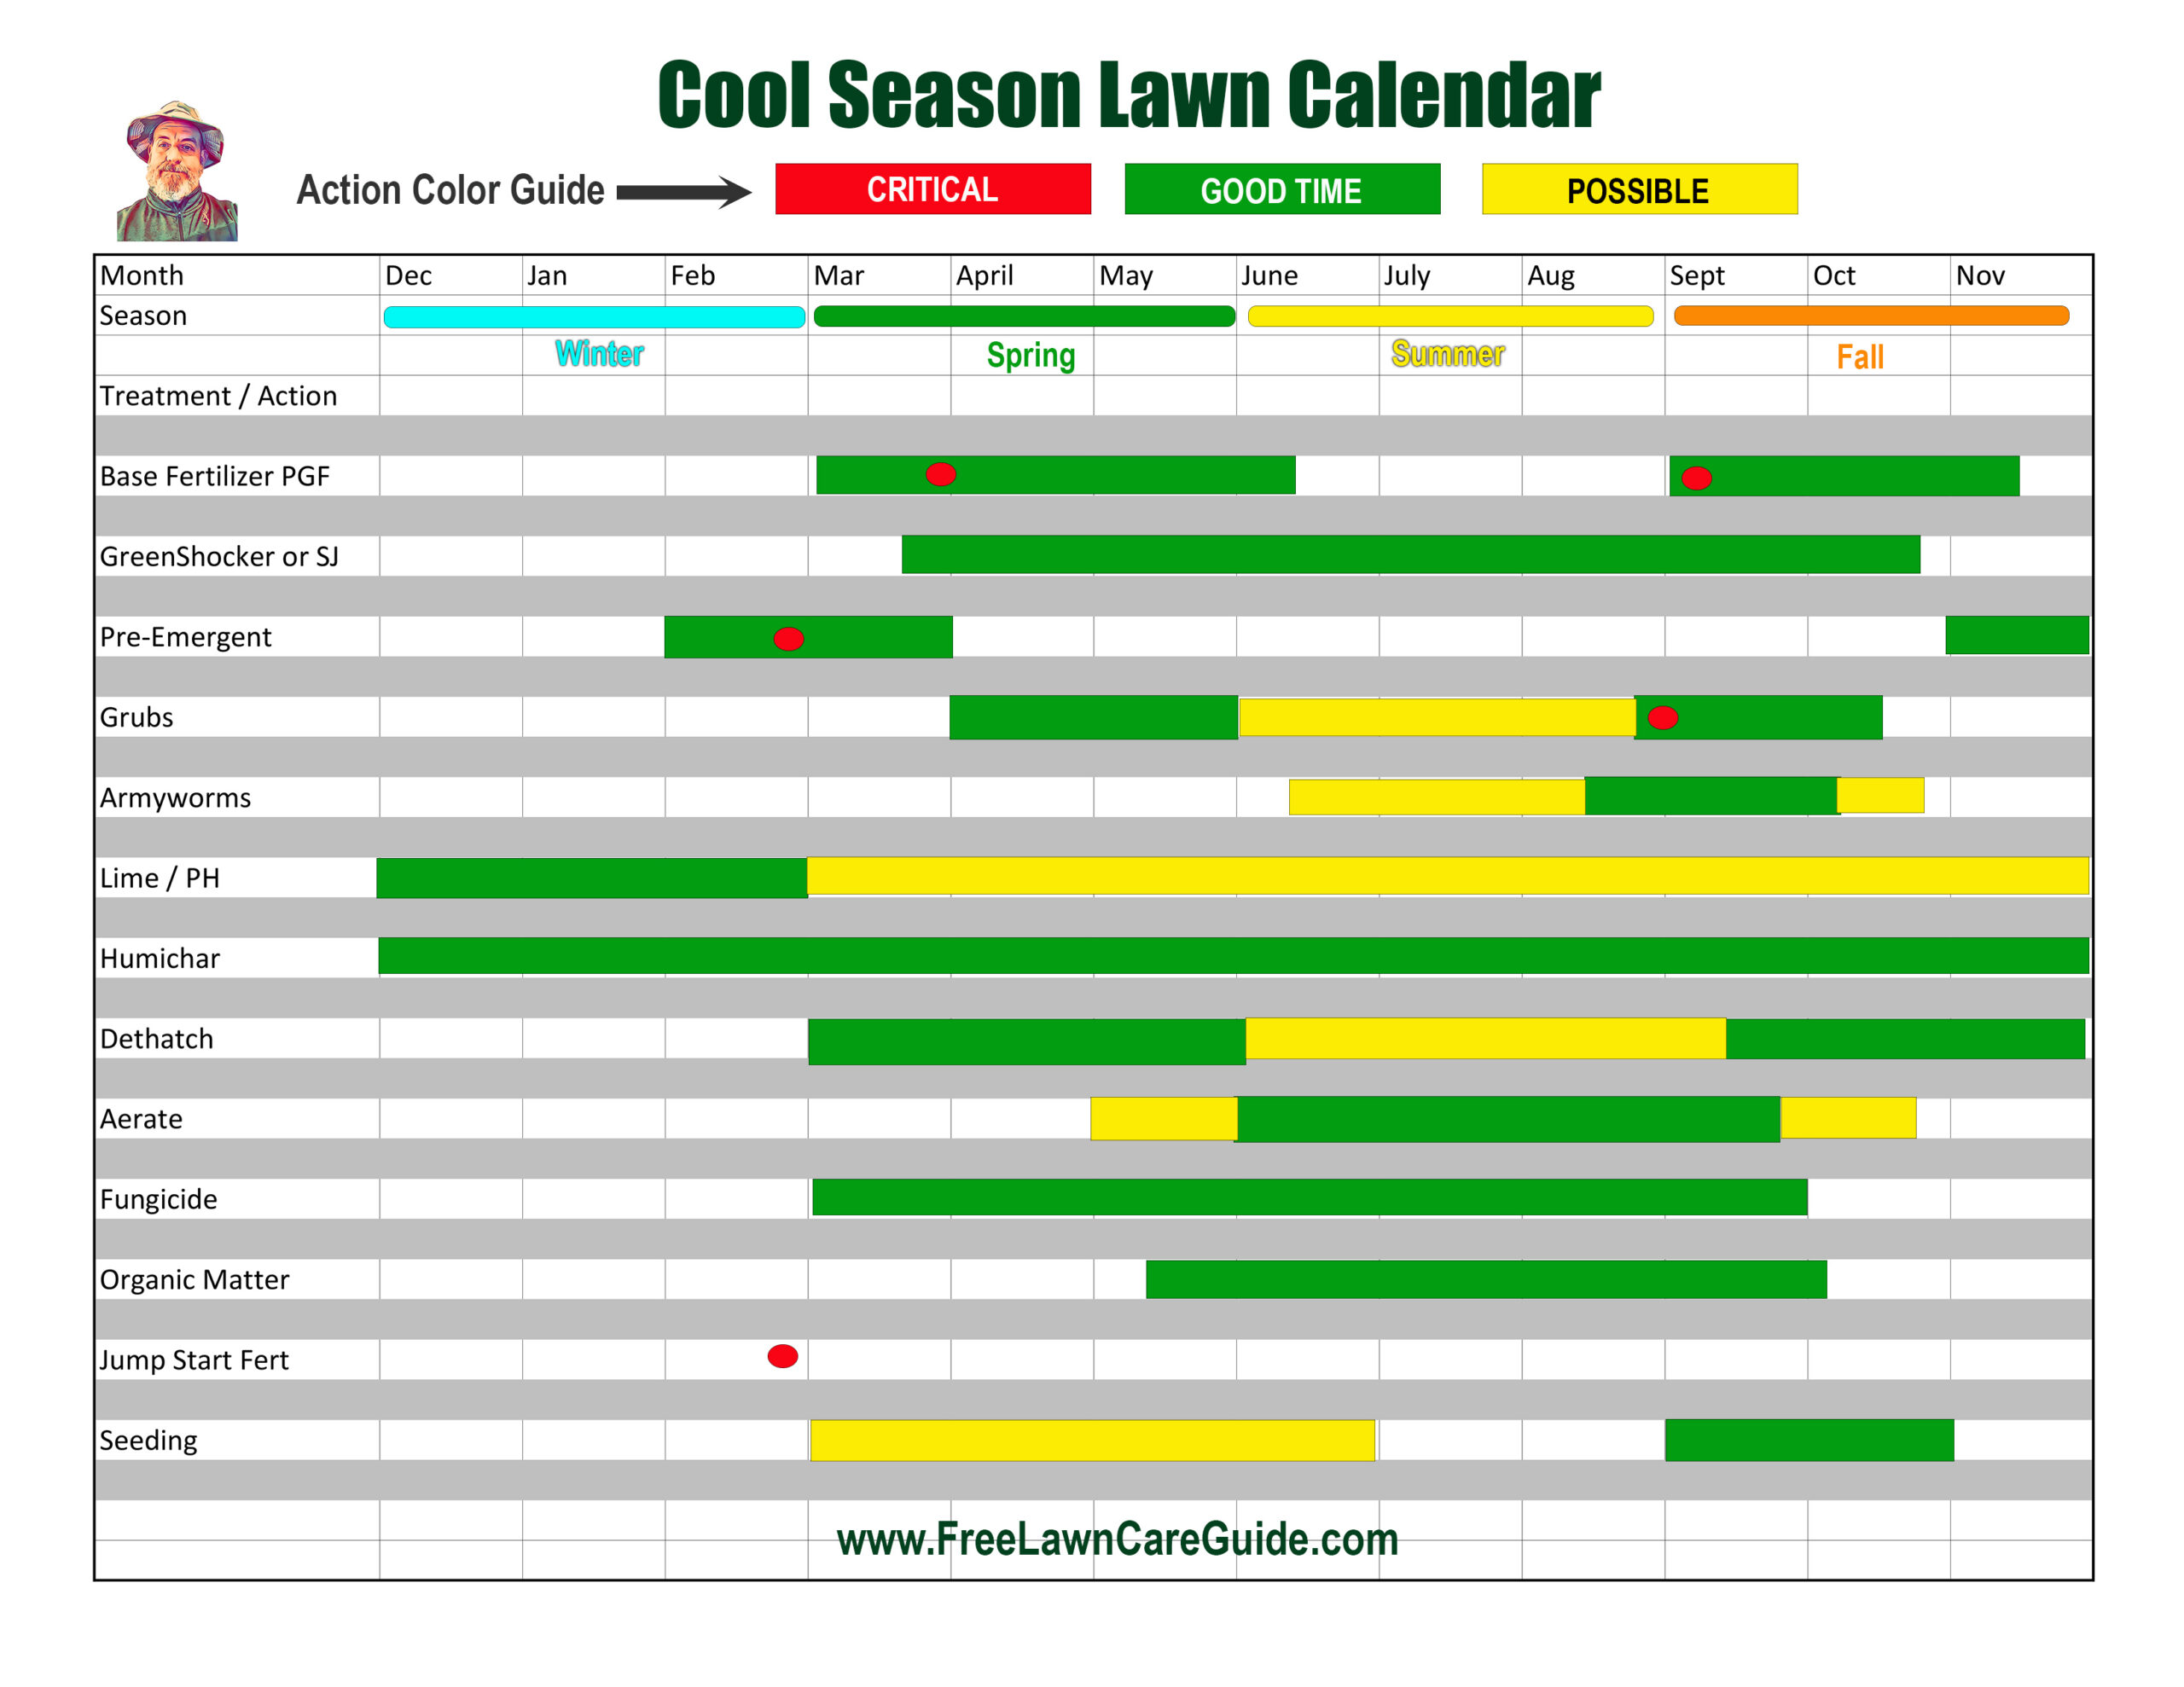 Lawn Care Calendar - Free Lawn Care Guide